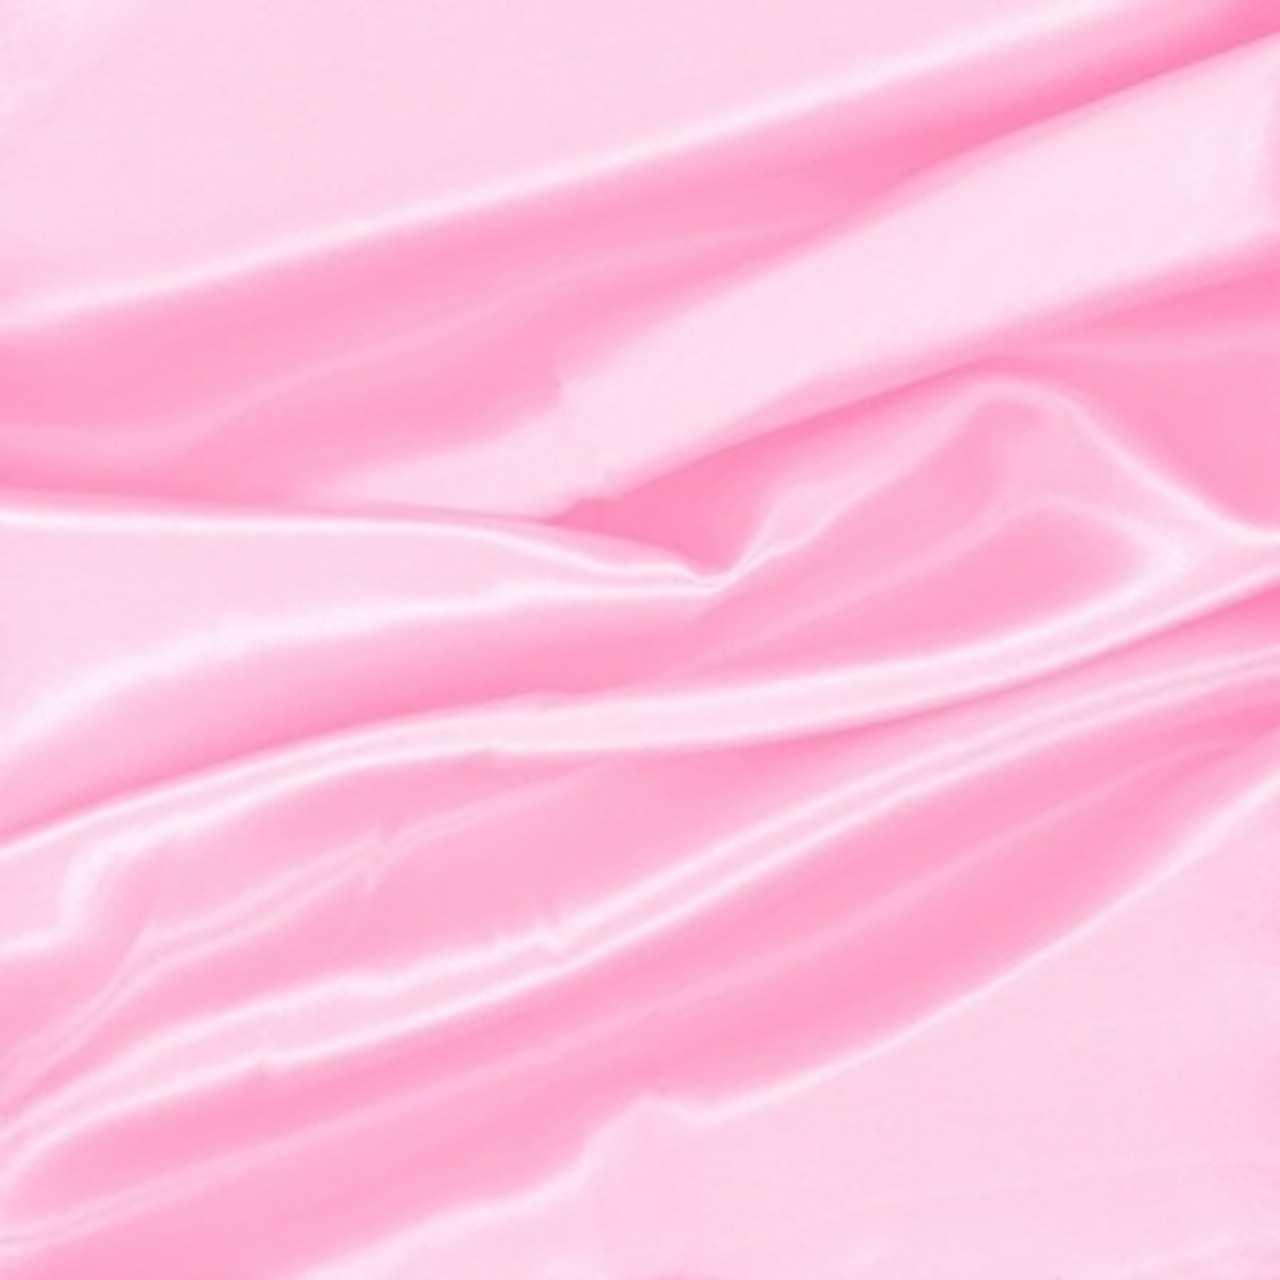 Pink Satin Fabric